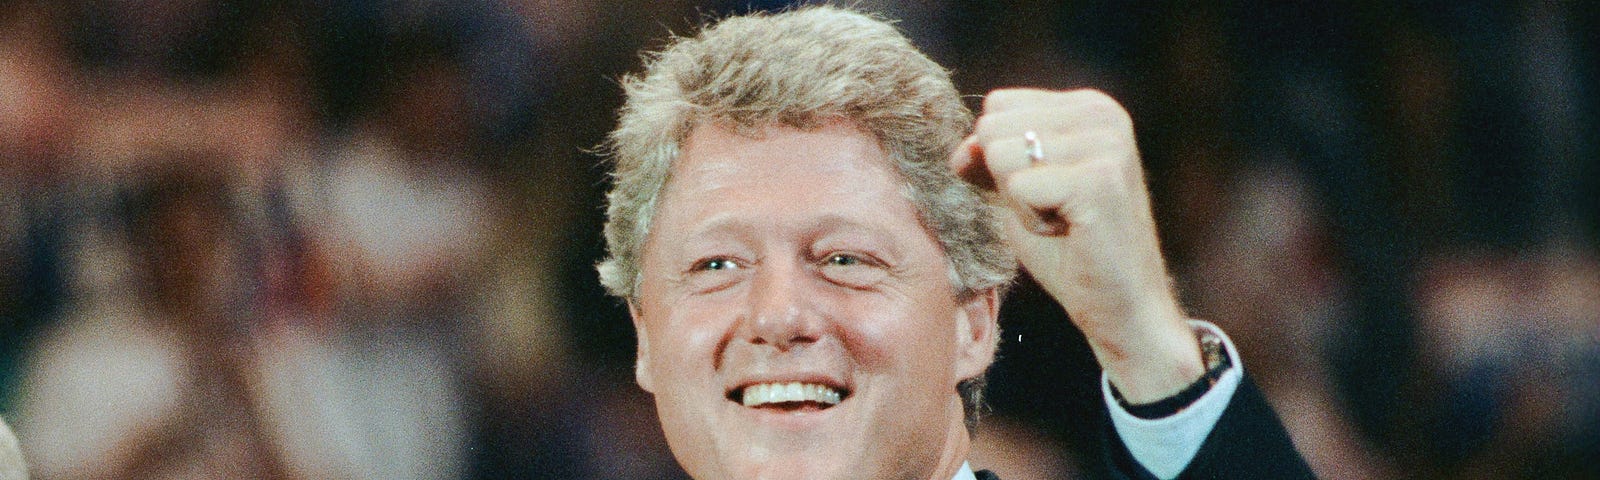 Bill Clinton in 1992